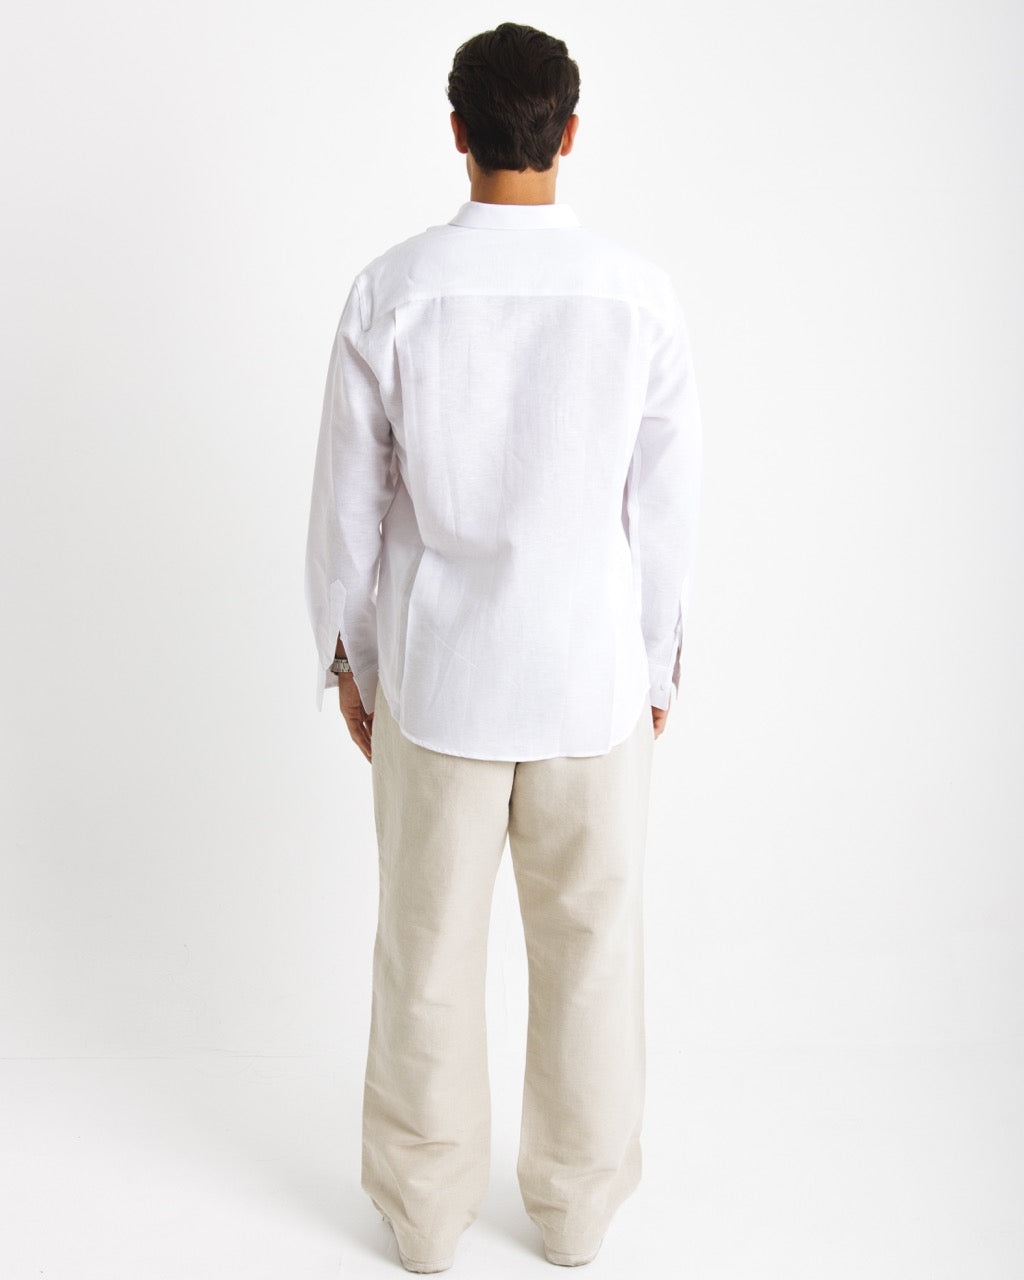 401 White Long Sleeve Shirts